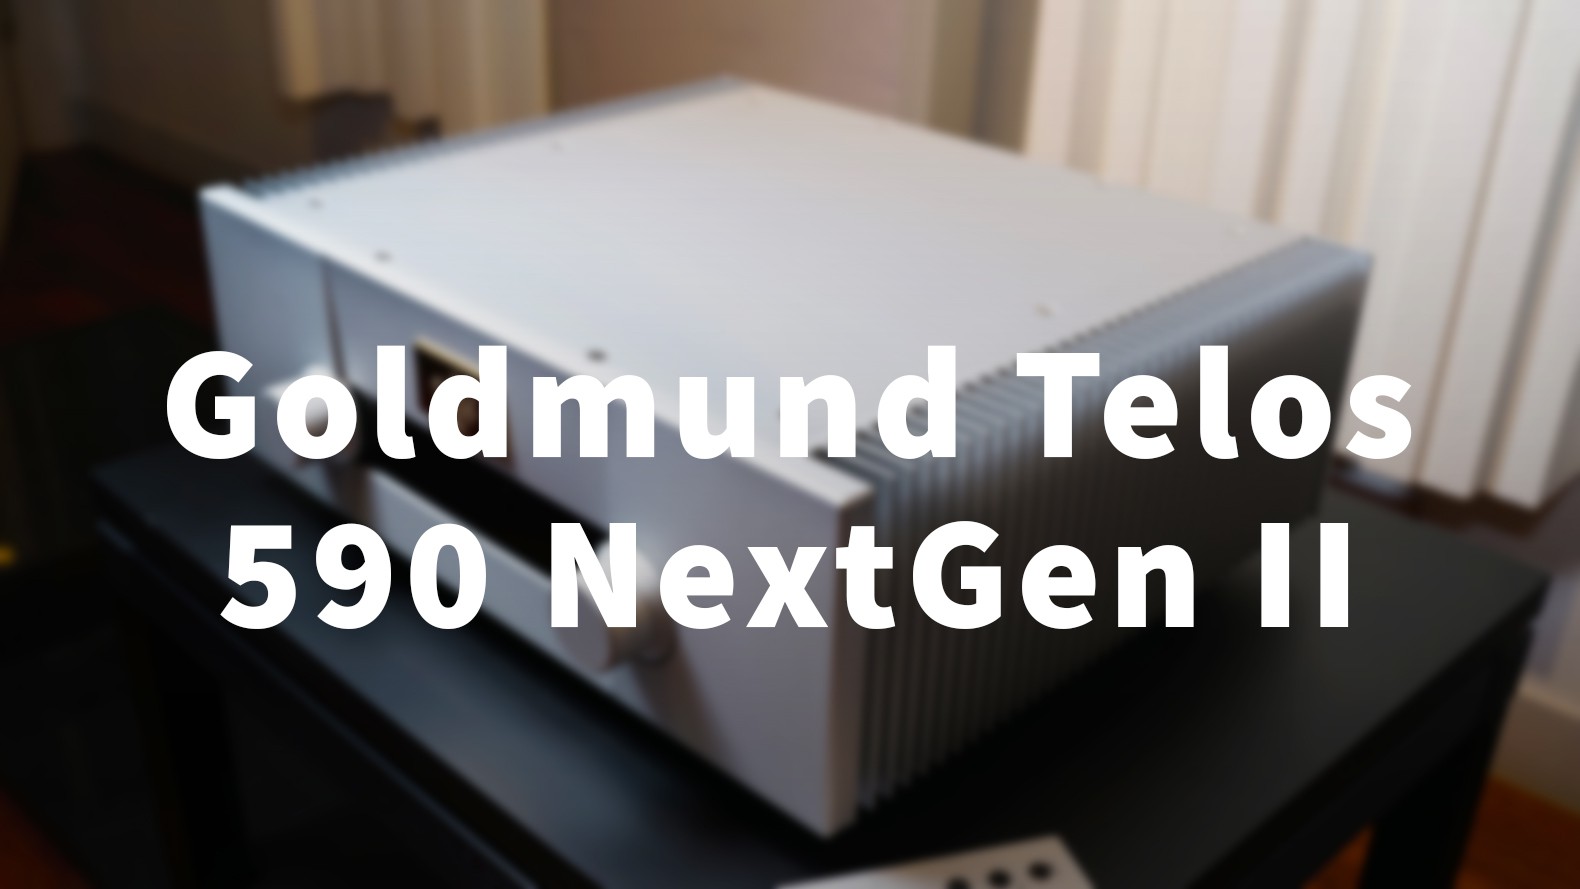 Goldmund Telos 590 NextGen II - Sức mạnh, sự vững chắc và mật độ âm sắc ở mức không tưởng